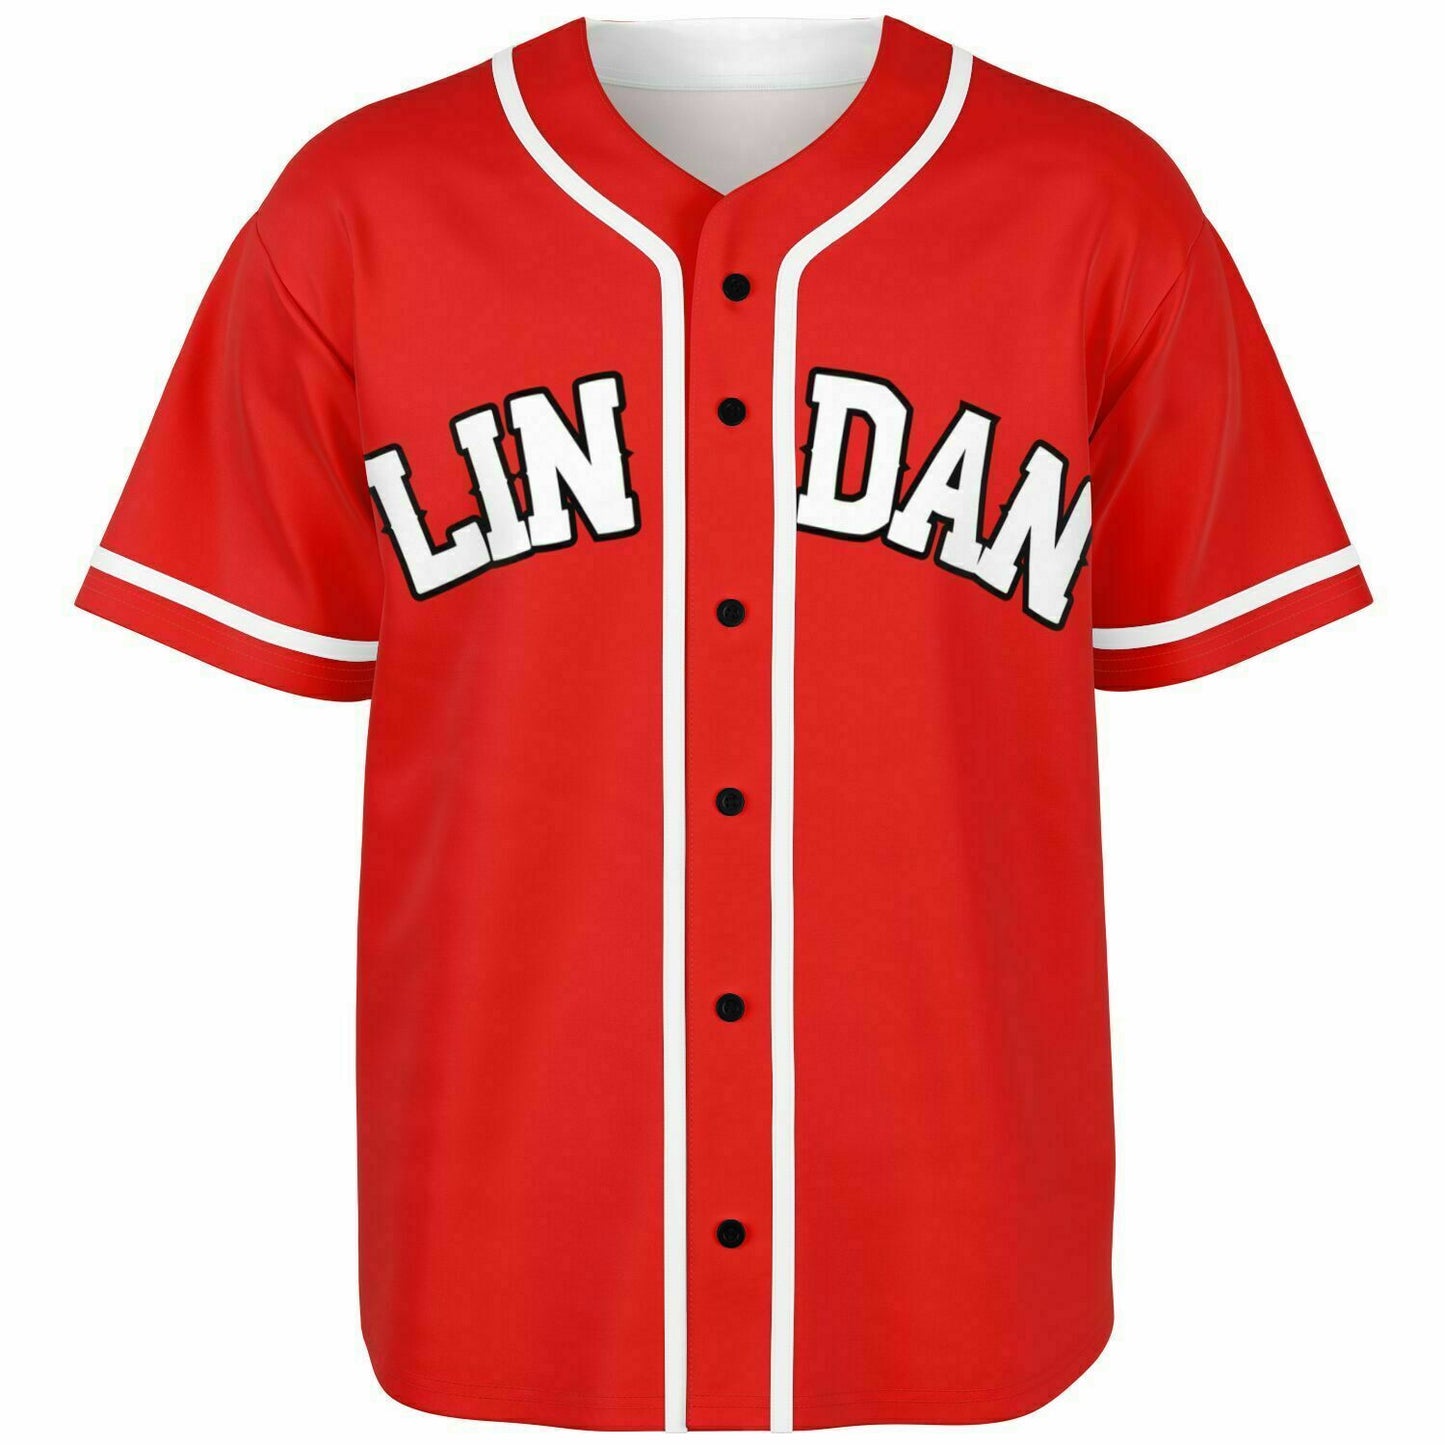 Lin Dan Baseball Jersey!